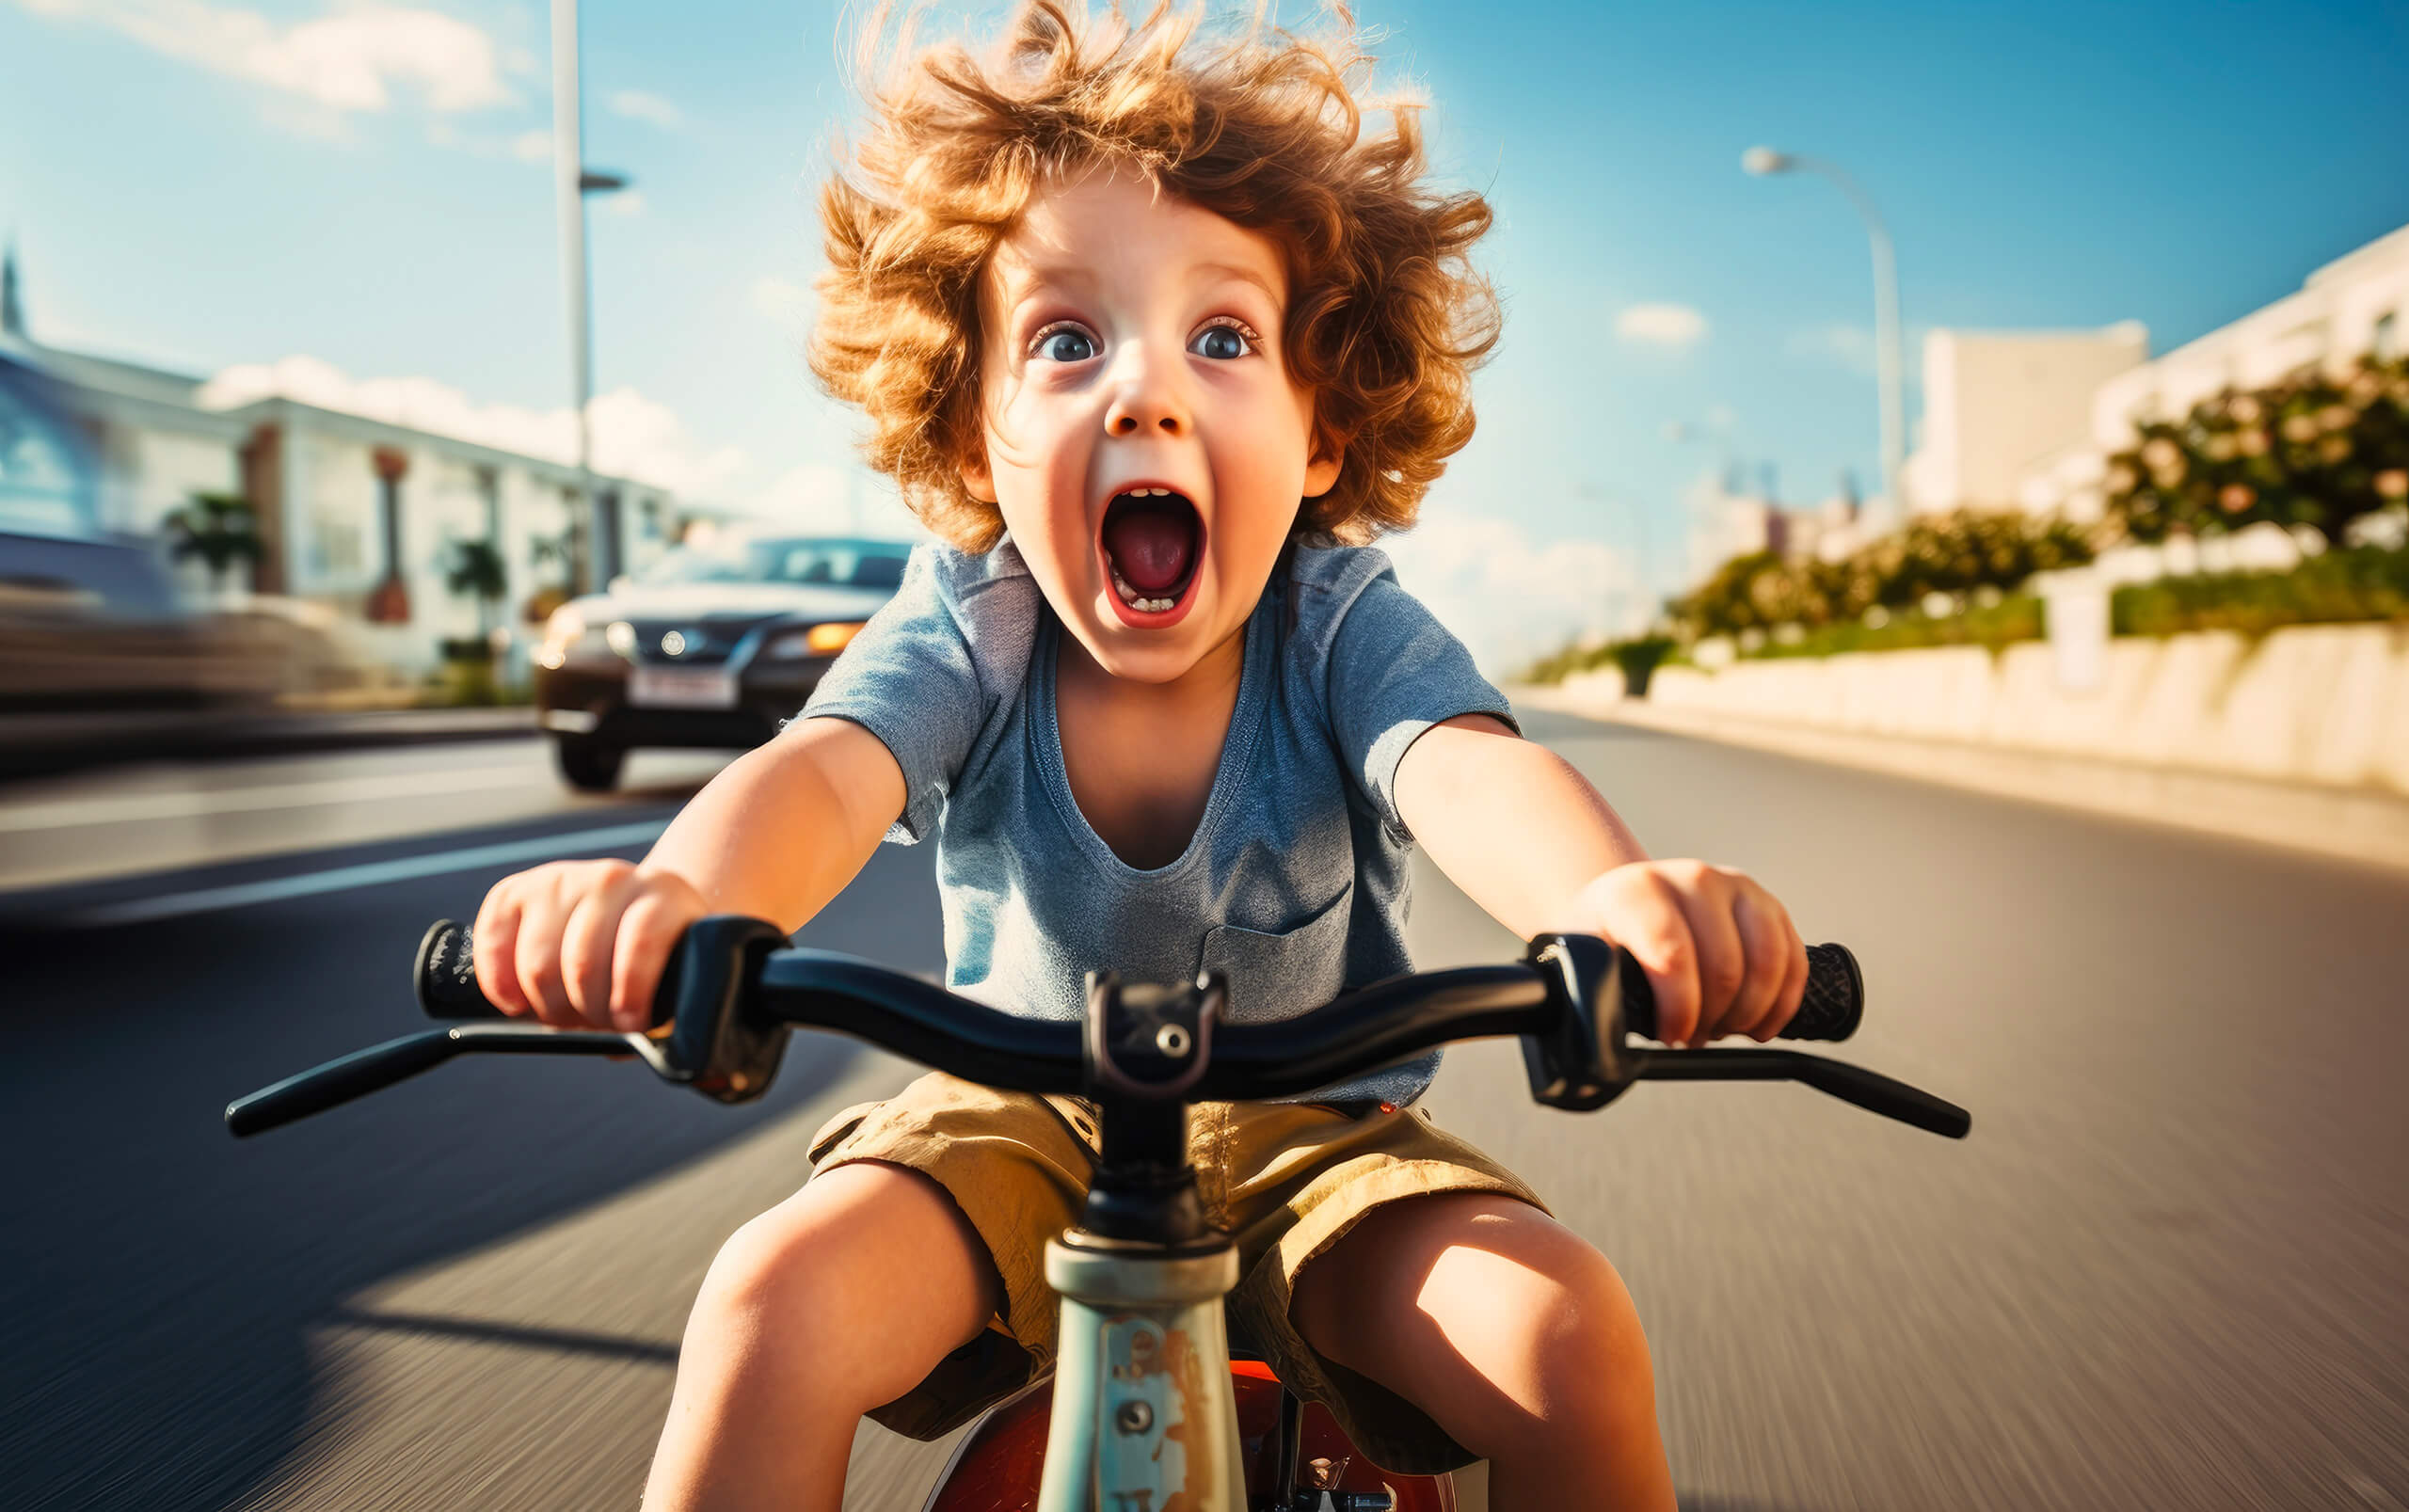 Cycles Passion Adour - Petit garçon qui fait du vélo